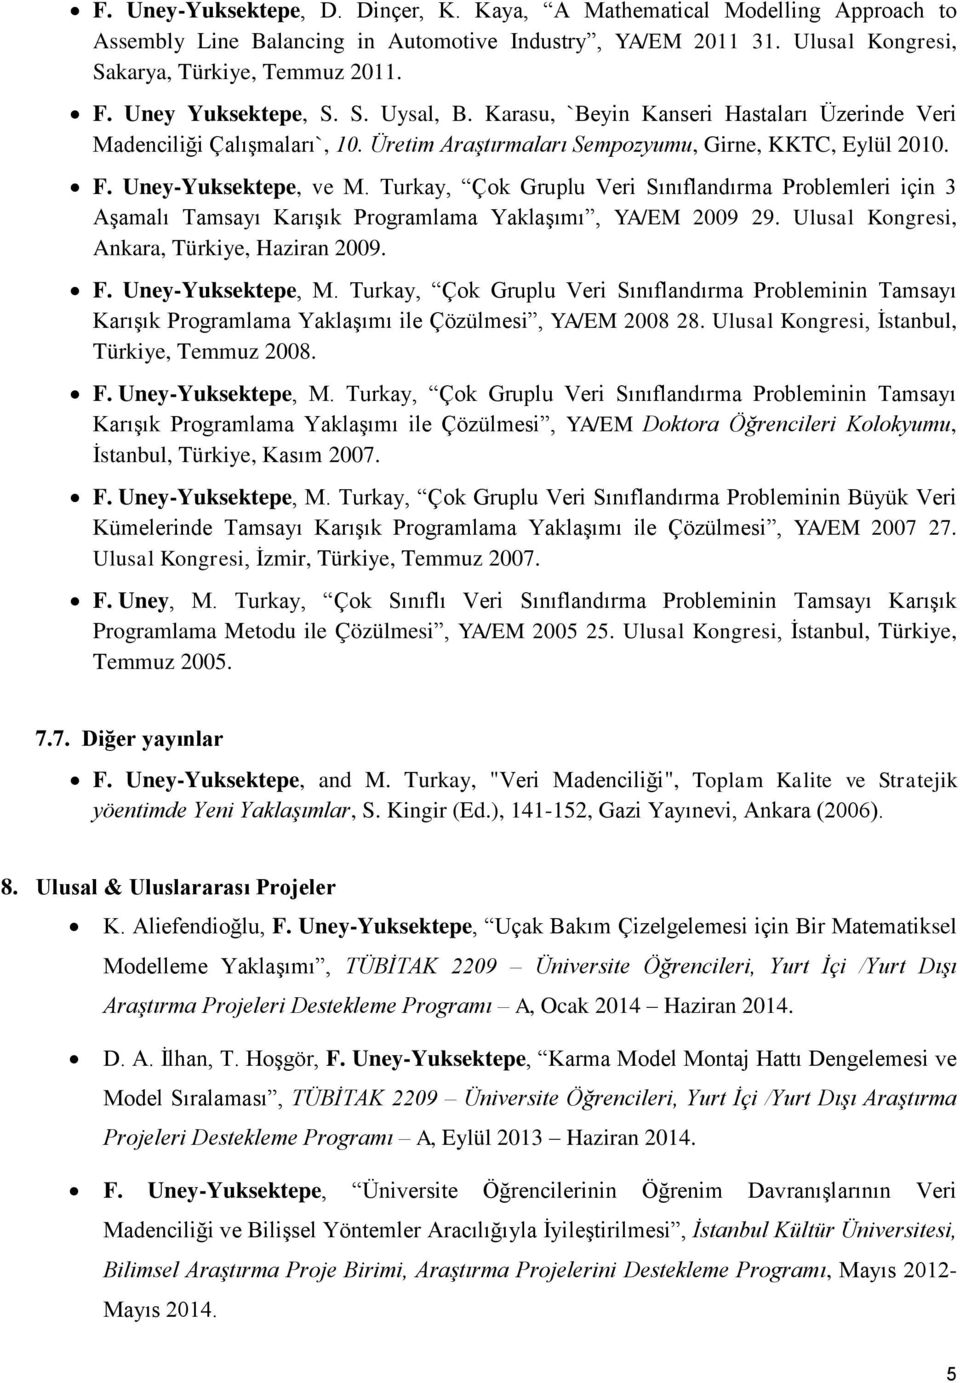 Turkay, Çok Gruplu Veri Sınıflandırma Problemleri için 3 Aşamalı Tamsayı Karışık Programlama Yaklaşımı, YA/EM 2009 29. Ulusal Kongresi, Ankara, Türkiye, Haziran 2009. F. Uney-Yuksektepe, M.